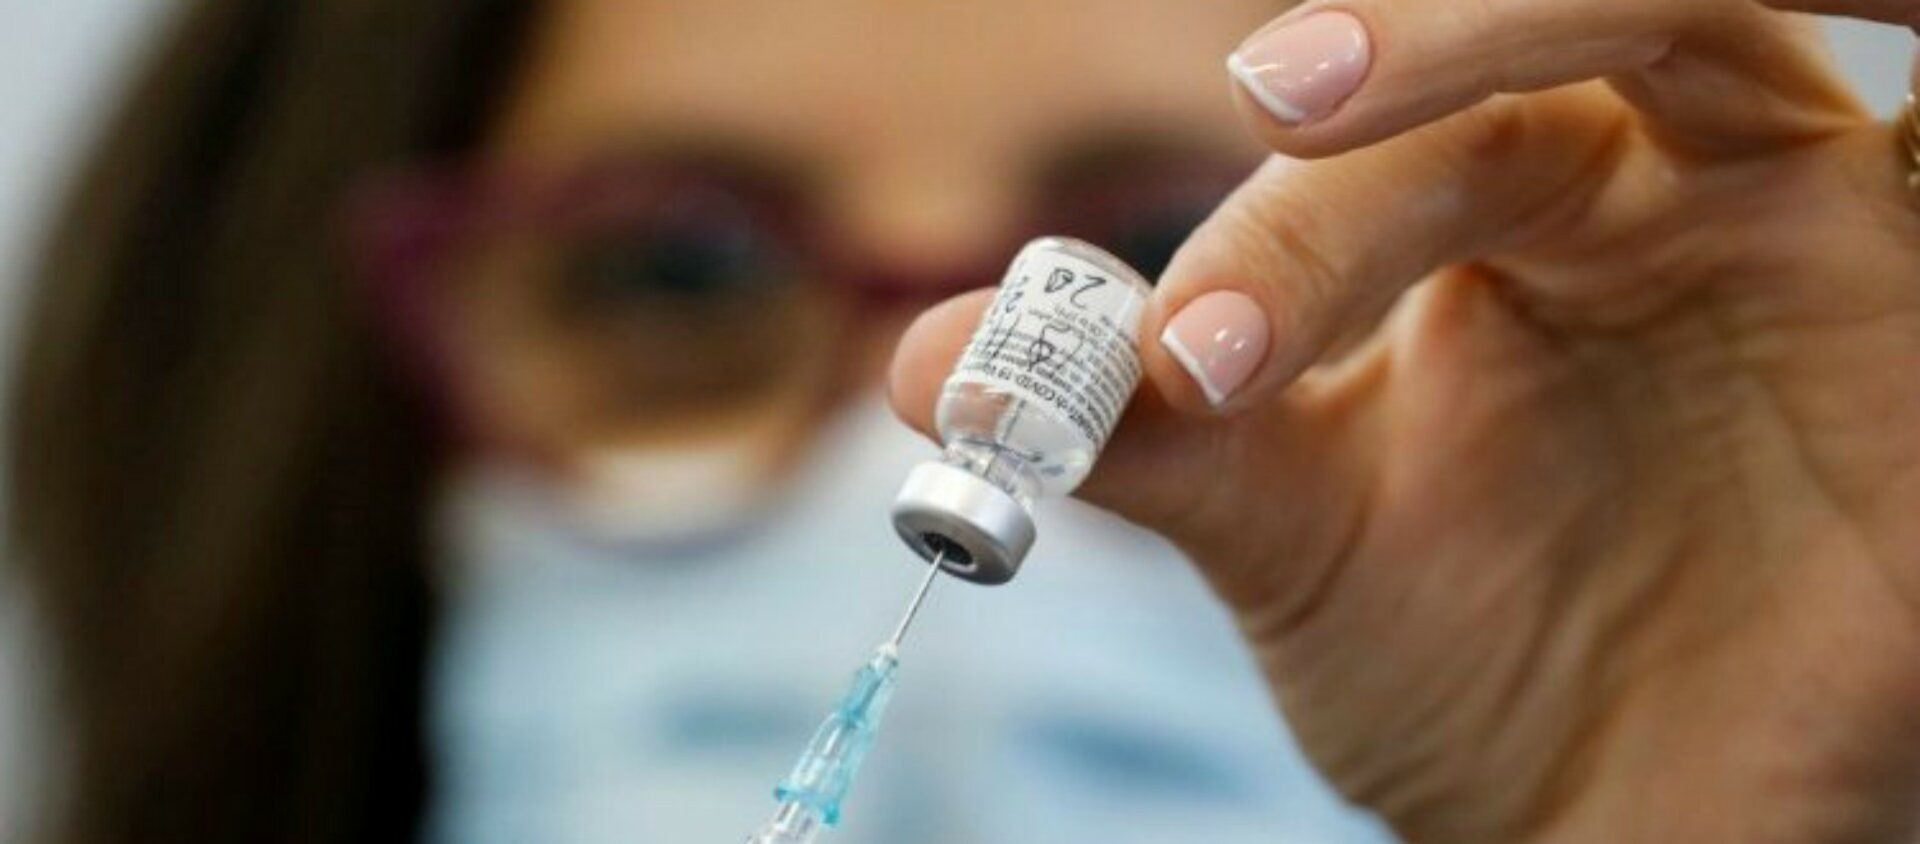 La campagne de vaccination débutera dans la deuxième quinzaine de janvier, annonce le Saint-Siège | © Vatican Media